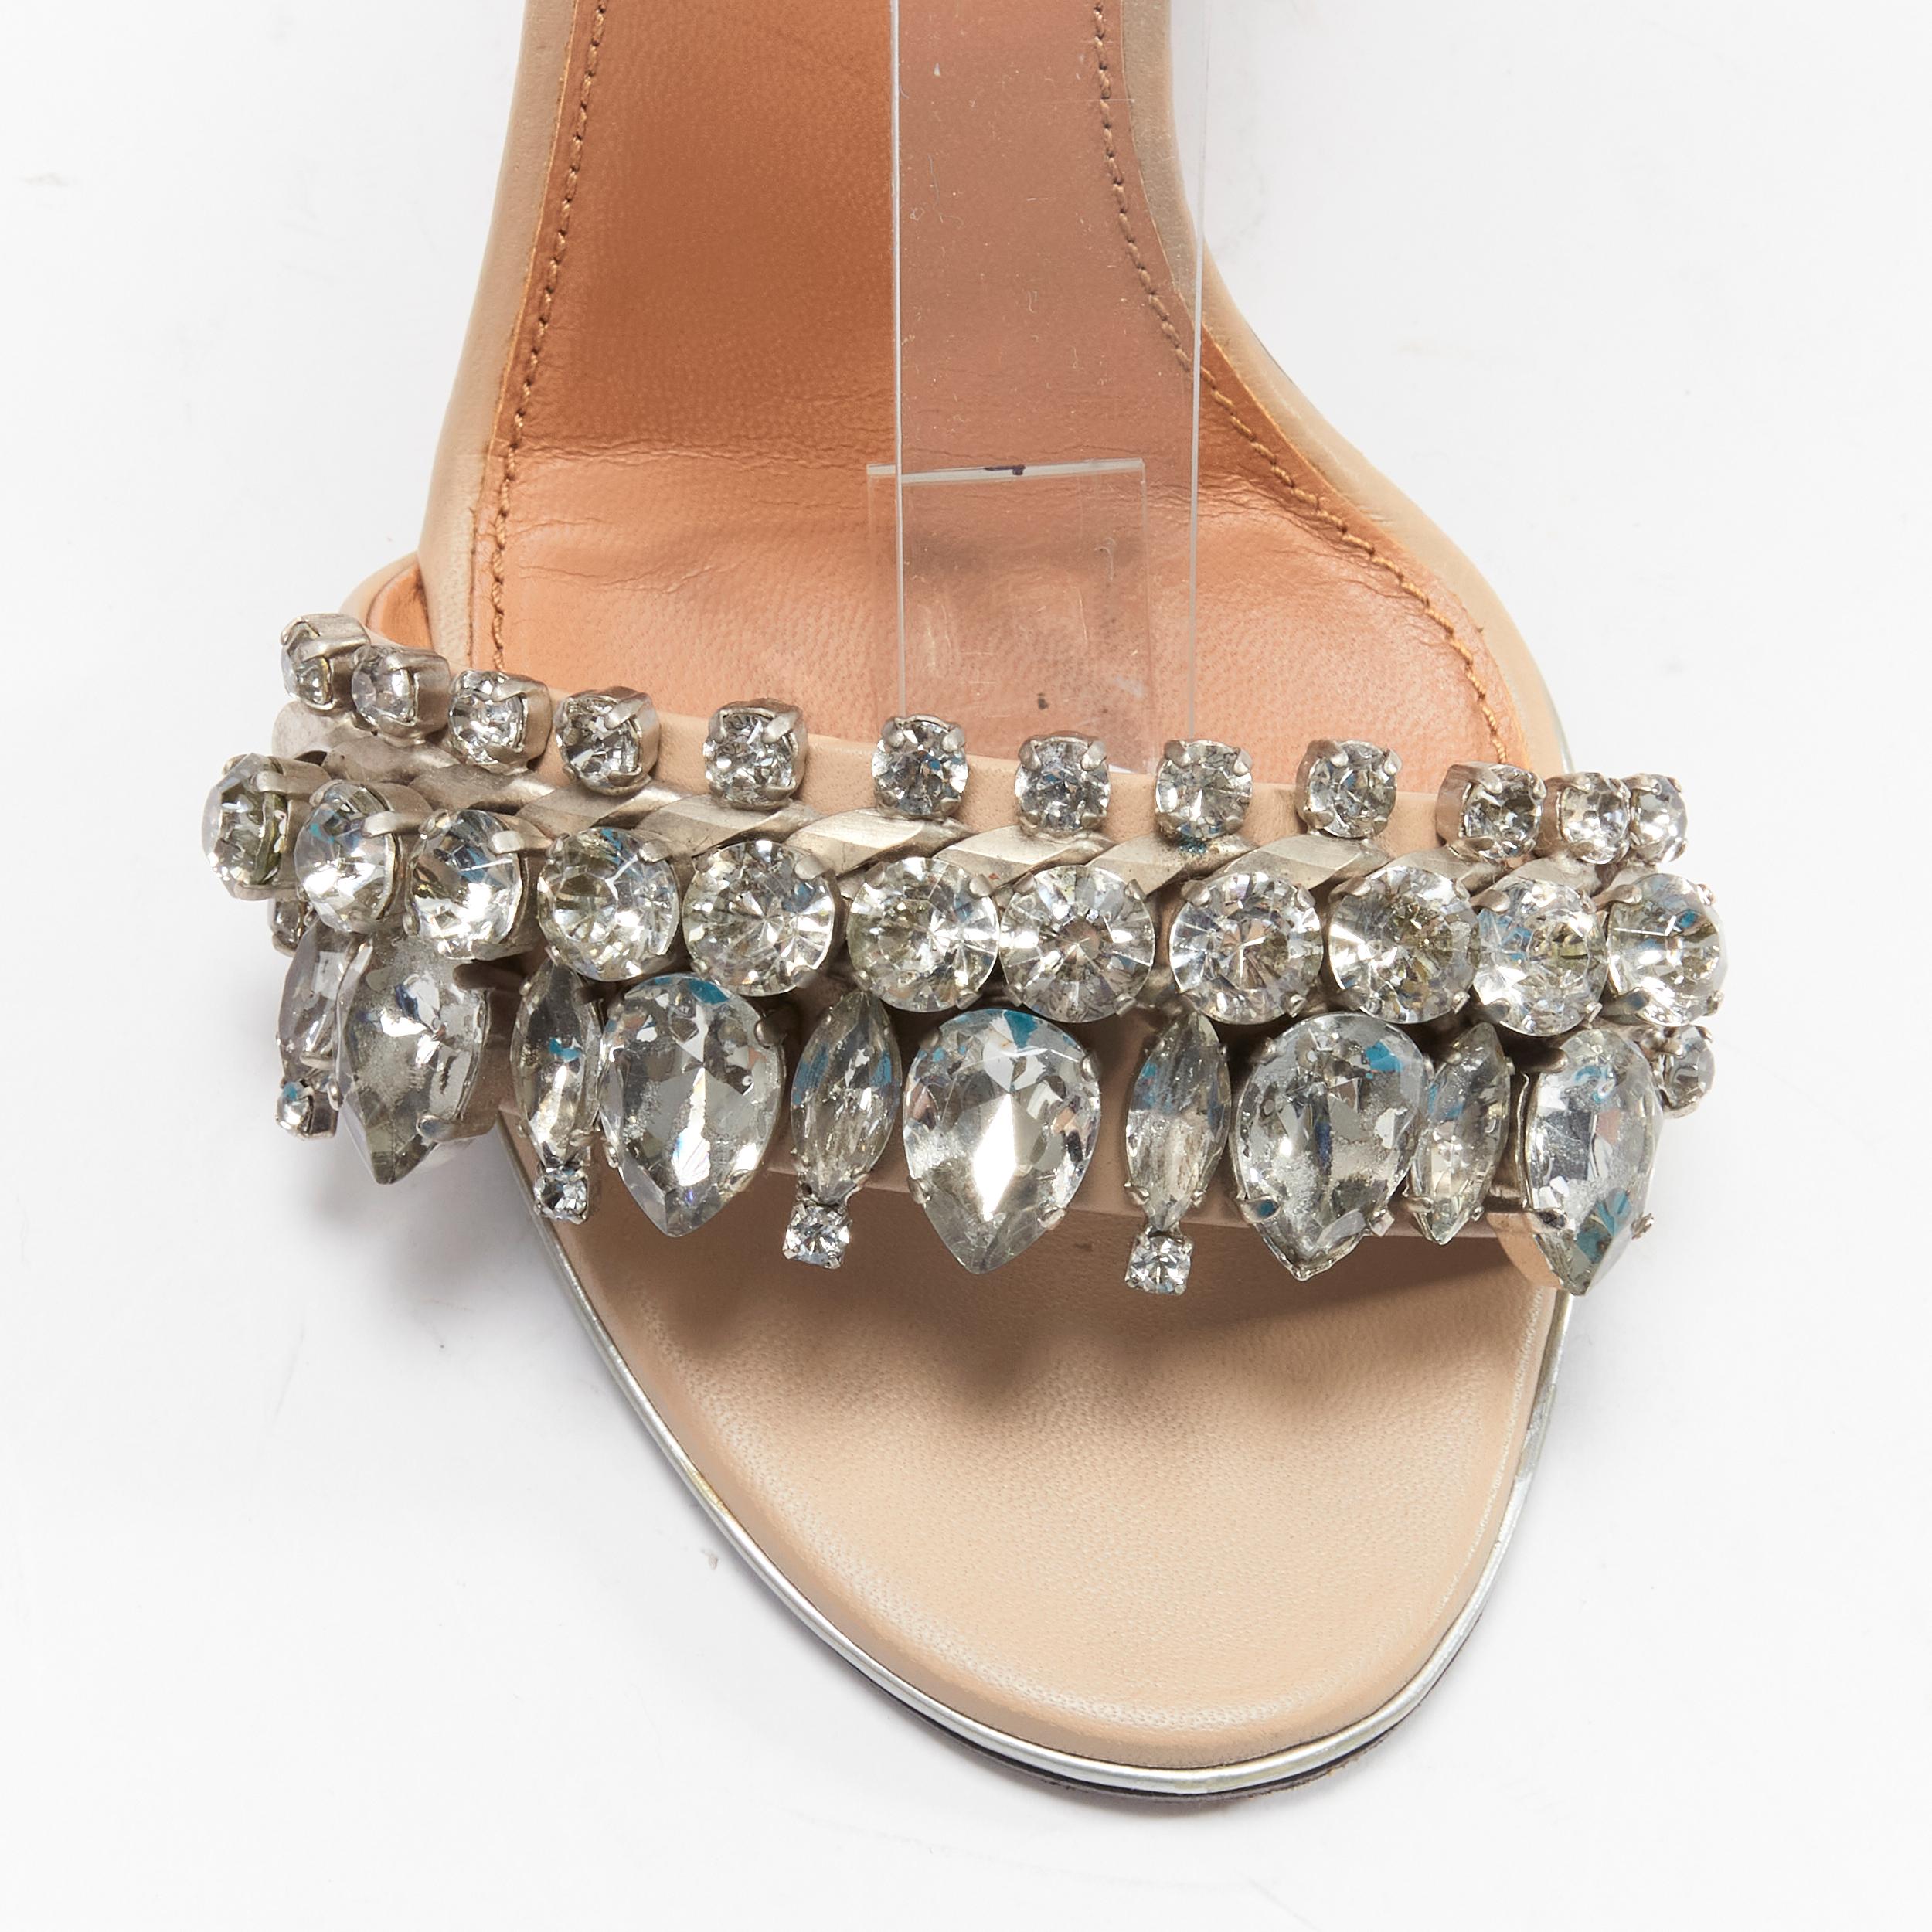 GIVENCHY Riccardo Tisci crystal embellished ankle strap high heel sandals EU37 For Sale 1